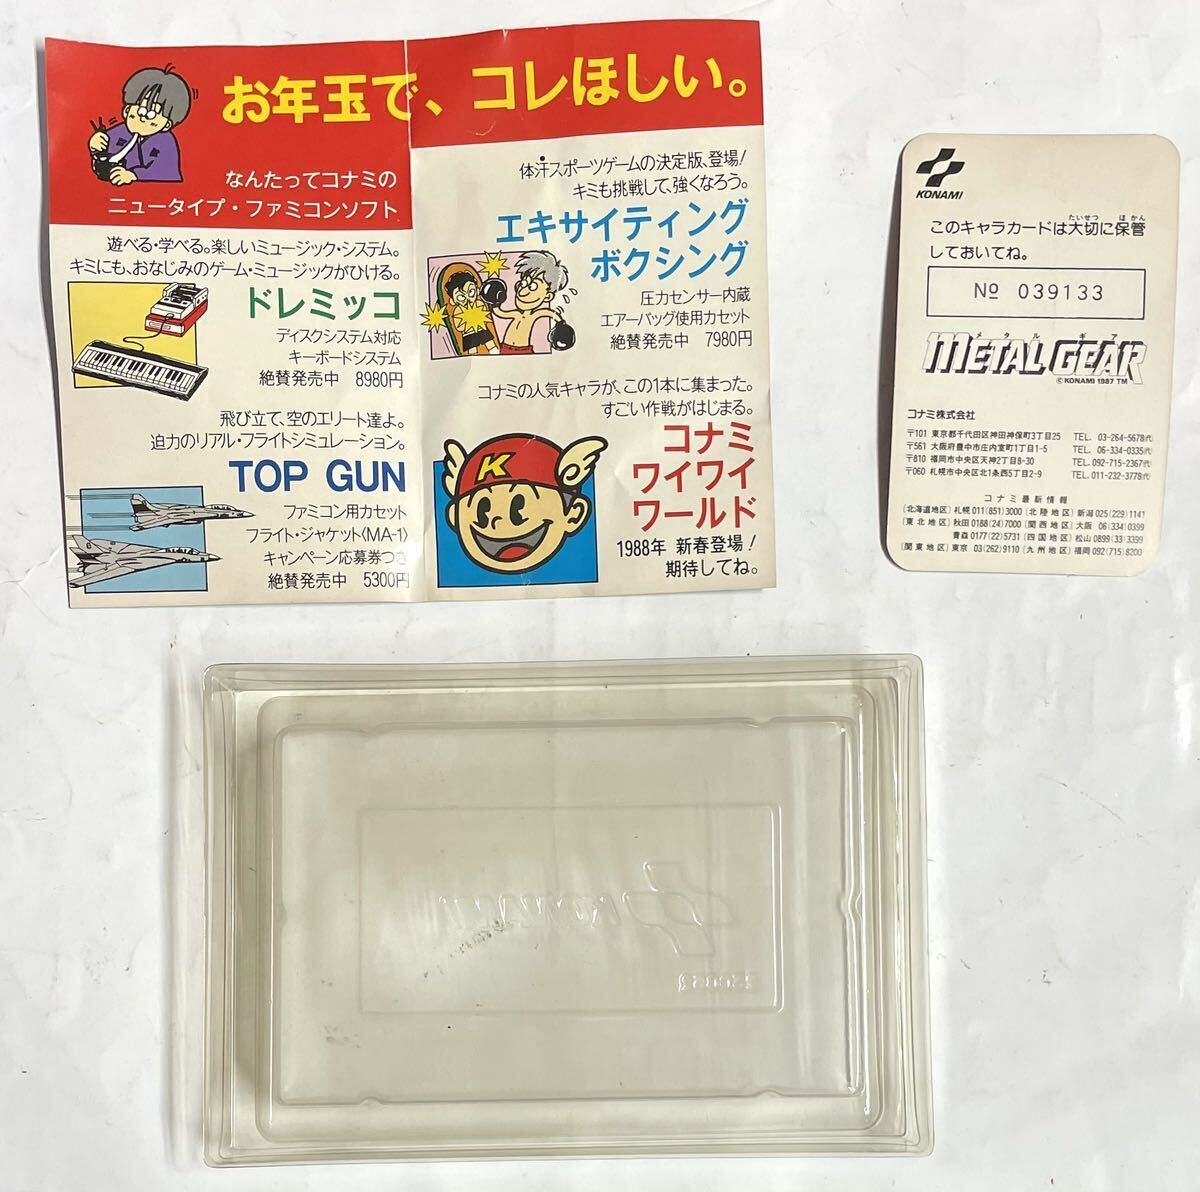 昭和レトロ 当時物 ファミリーコンピューター コナミ メタルギア キャラカード チラシ ロゴ カセットケース ファミコン KONAMI の画像2